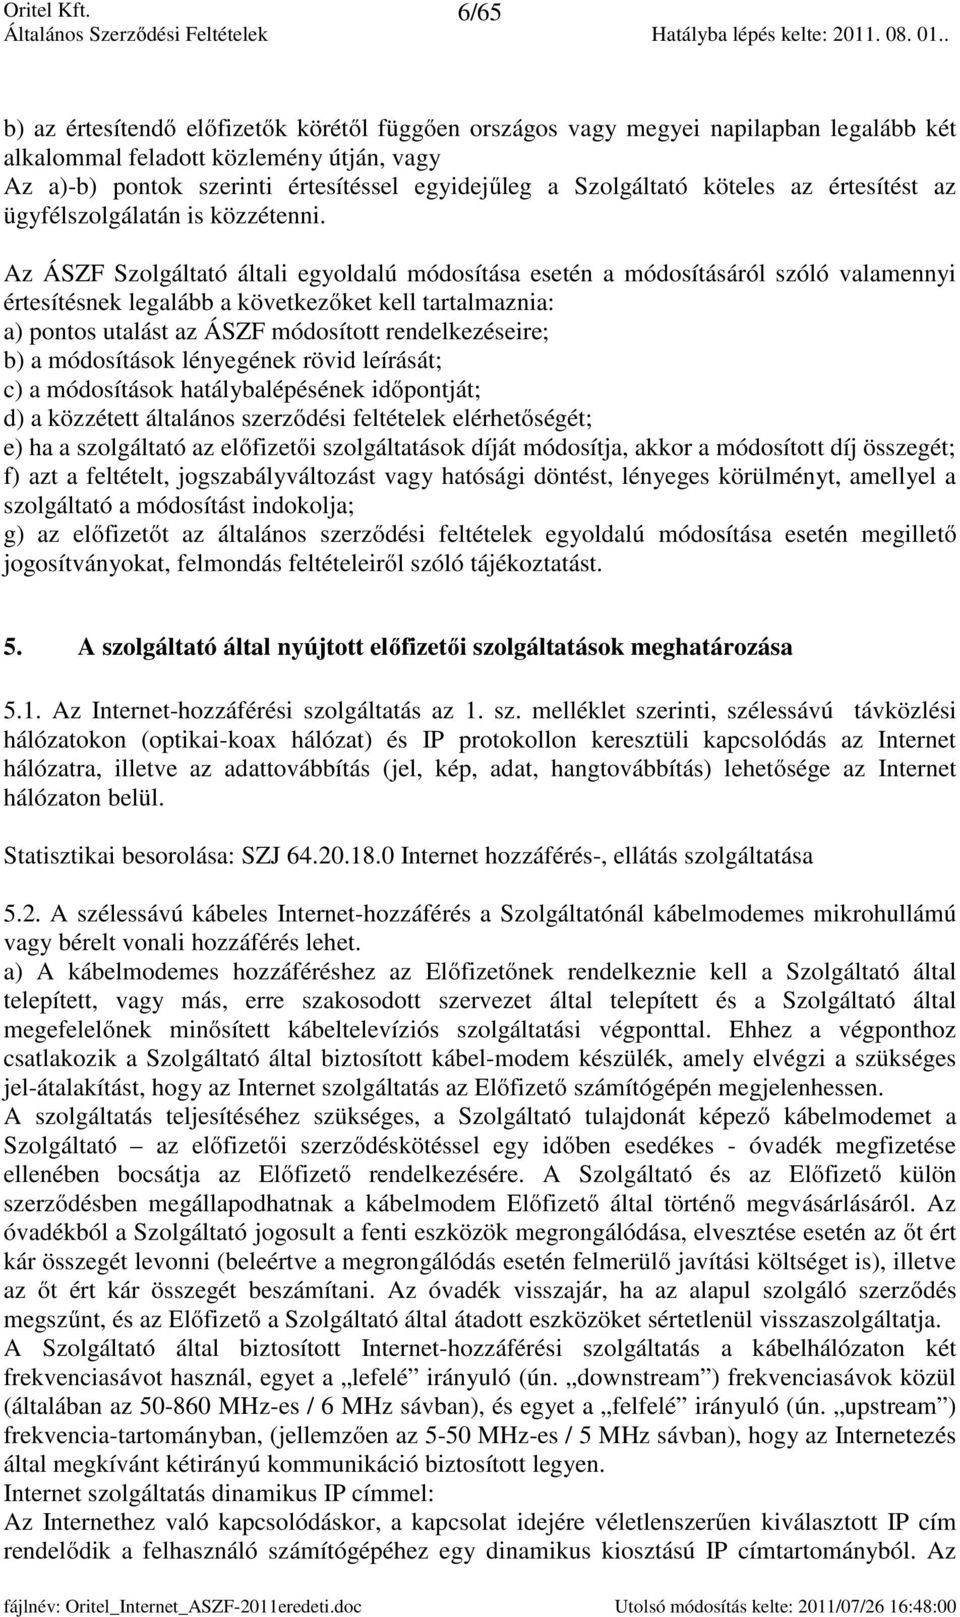 ORITEL KFT. szolgáltató. Általános Szerződési Feltételek Internet-hozzáférési  szolgáltatáshoz - PDF Ingyenes letöltés